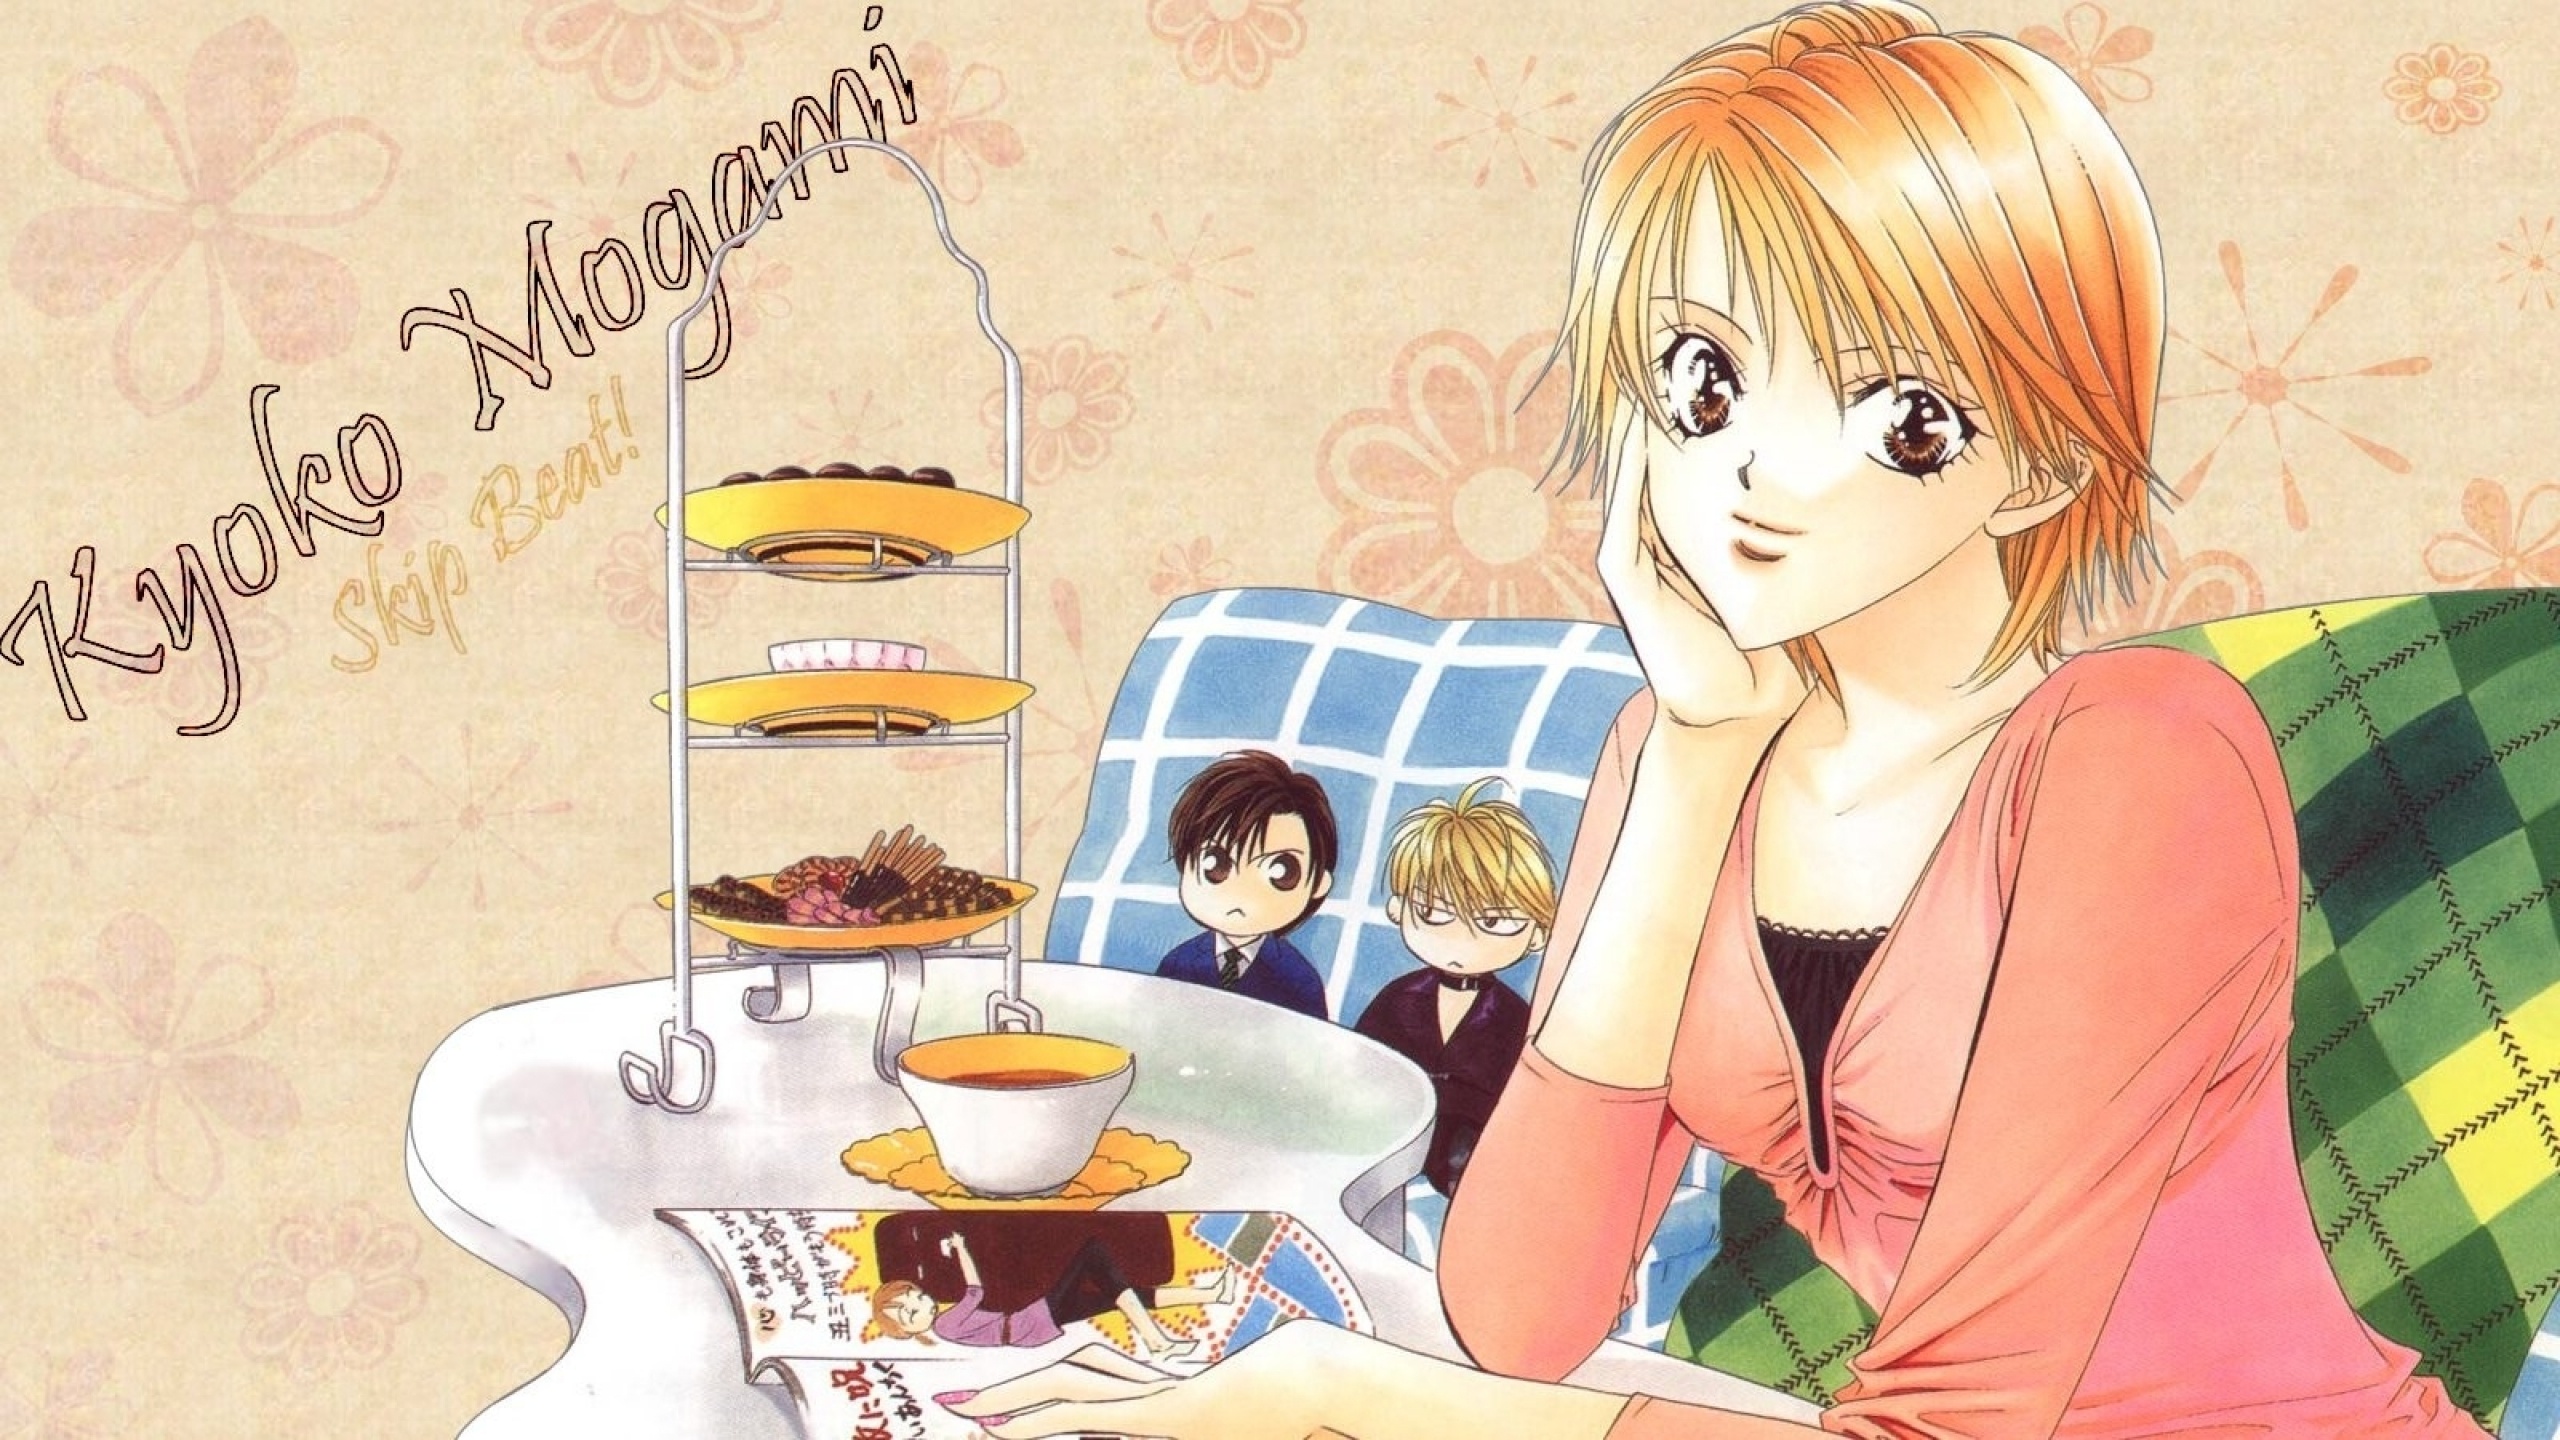 Skip Beat! Mogami Kyoko, Wallpaper Fanpop, Manga adaptation, Popularity, 2560x1440 HD Desktop